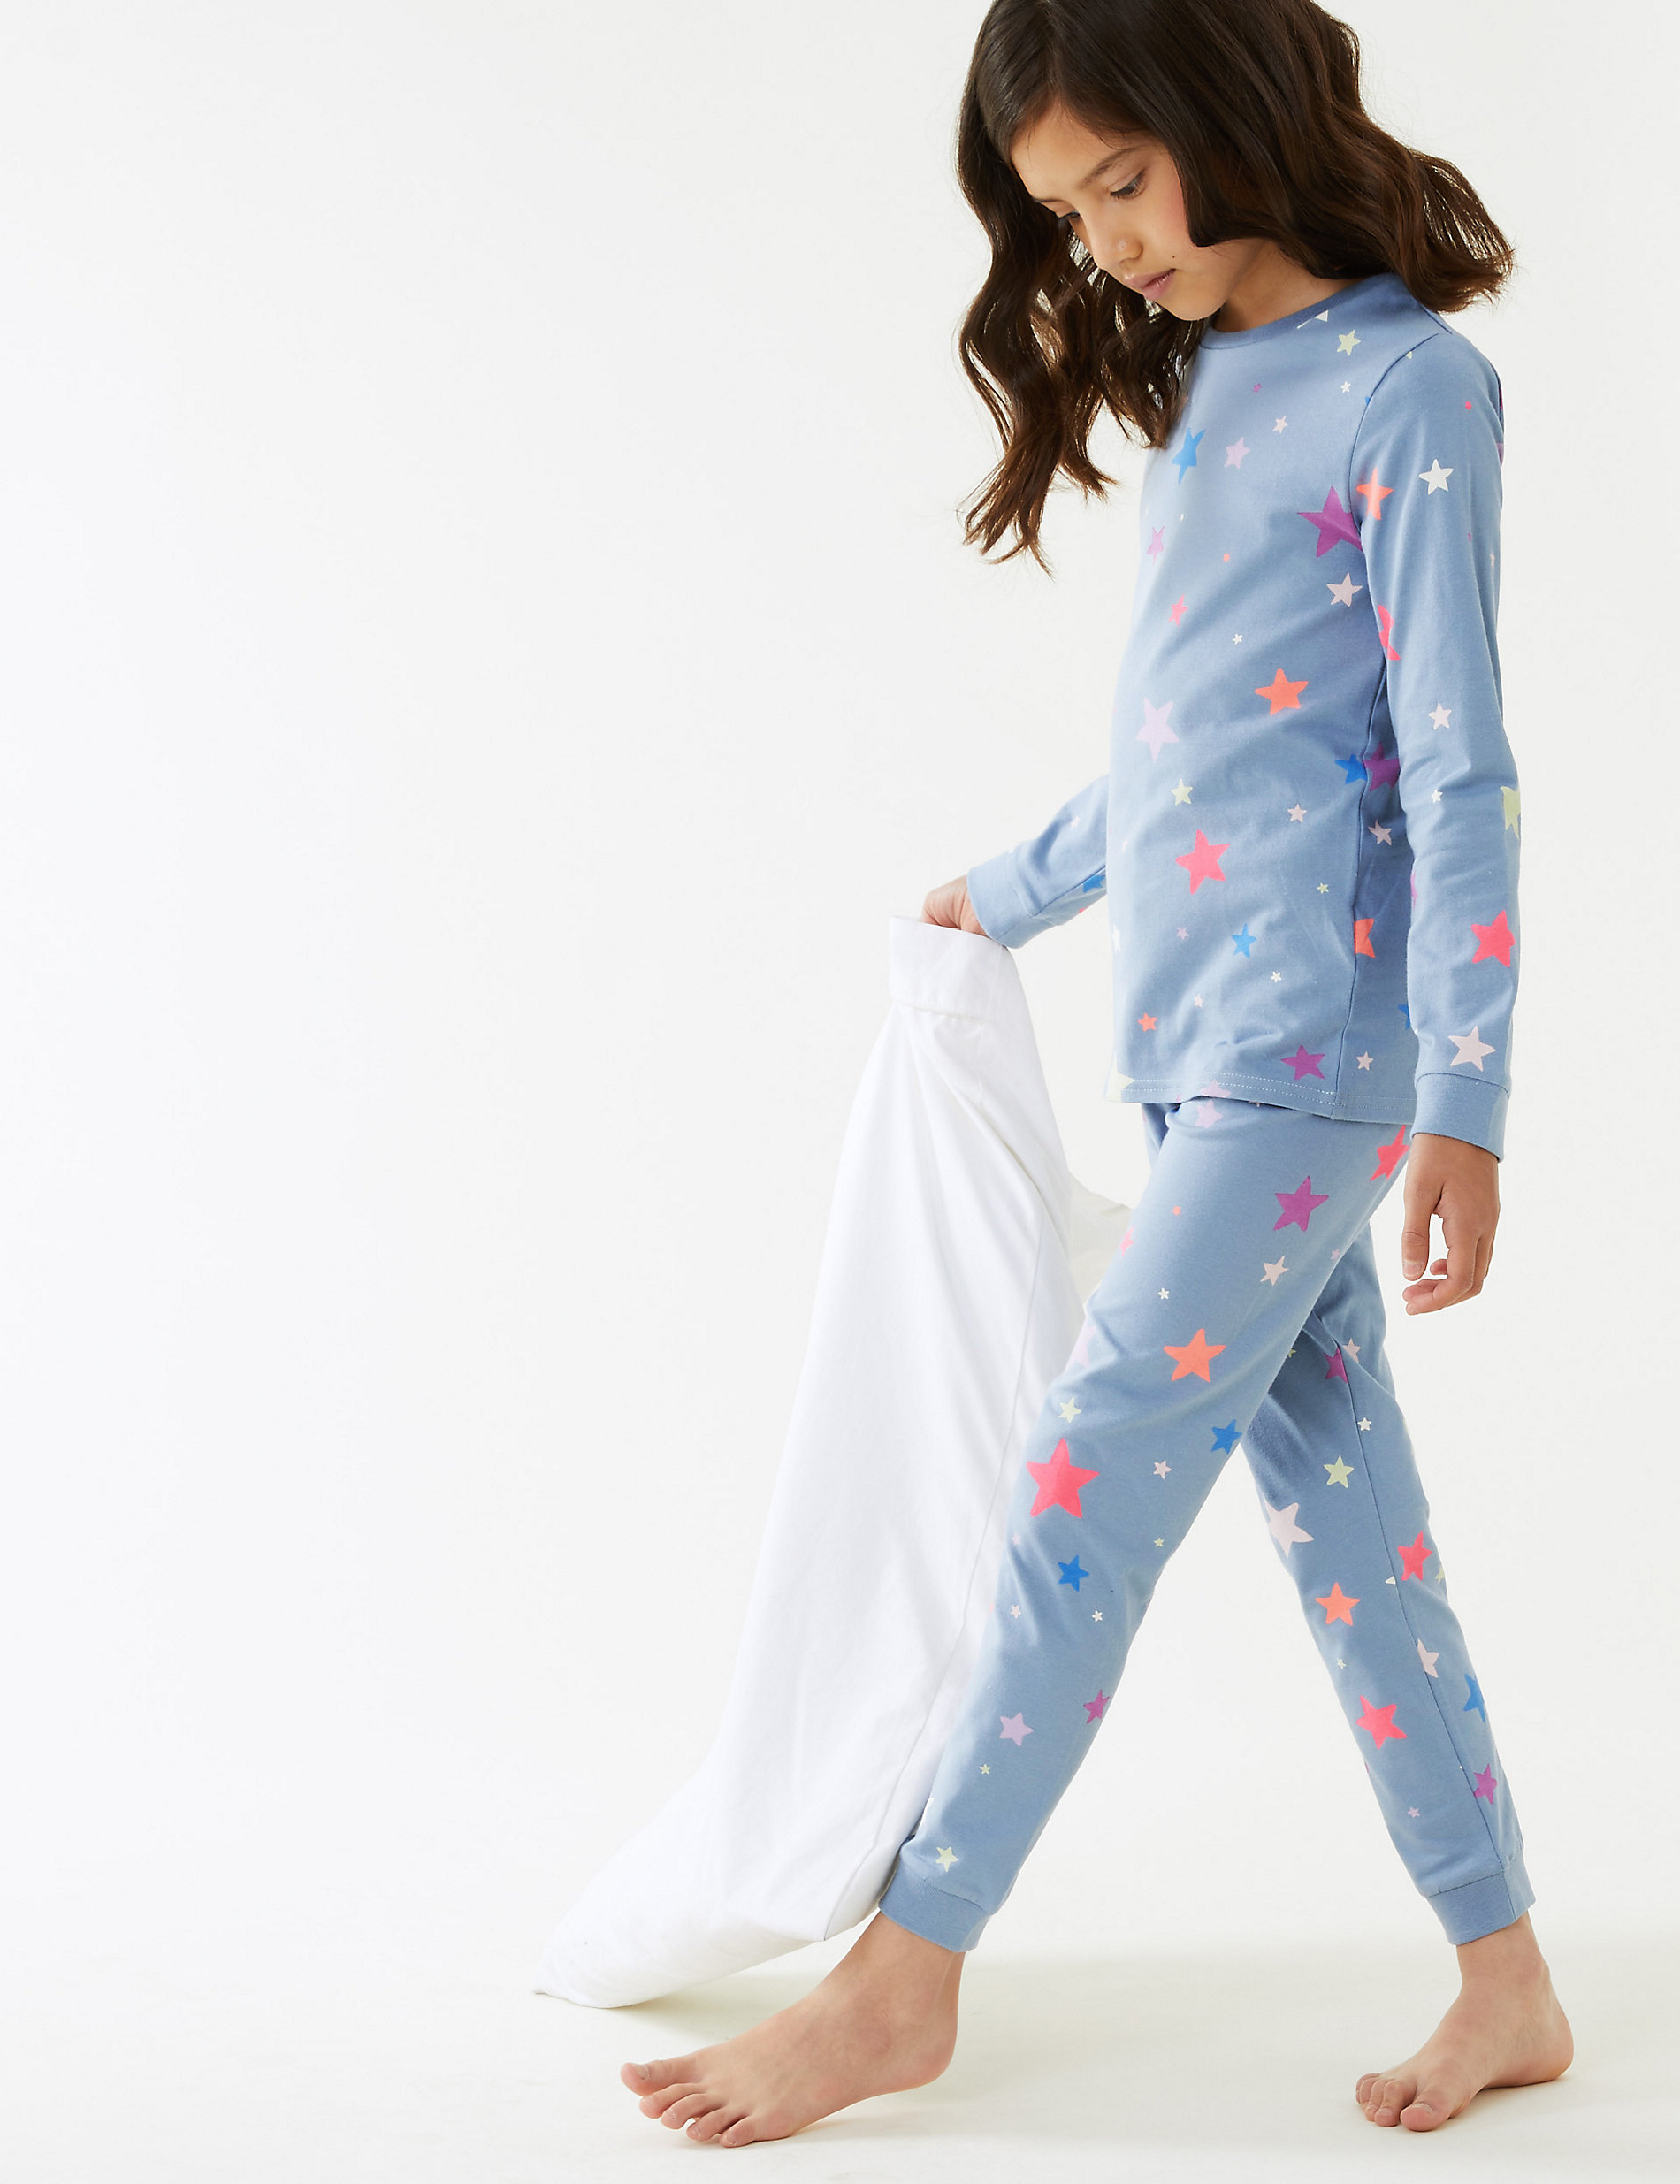 Zuiver katoenen pyjama met sterrenprint (7-16 jaar)